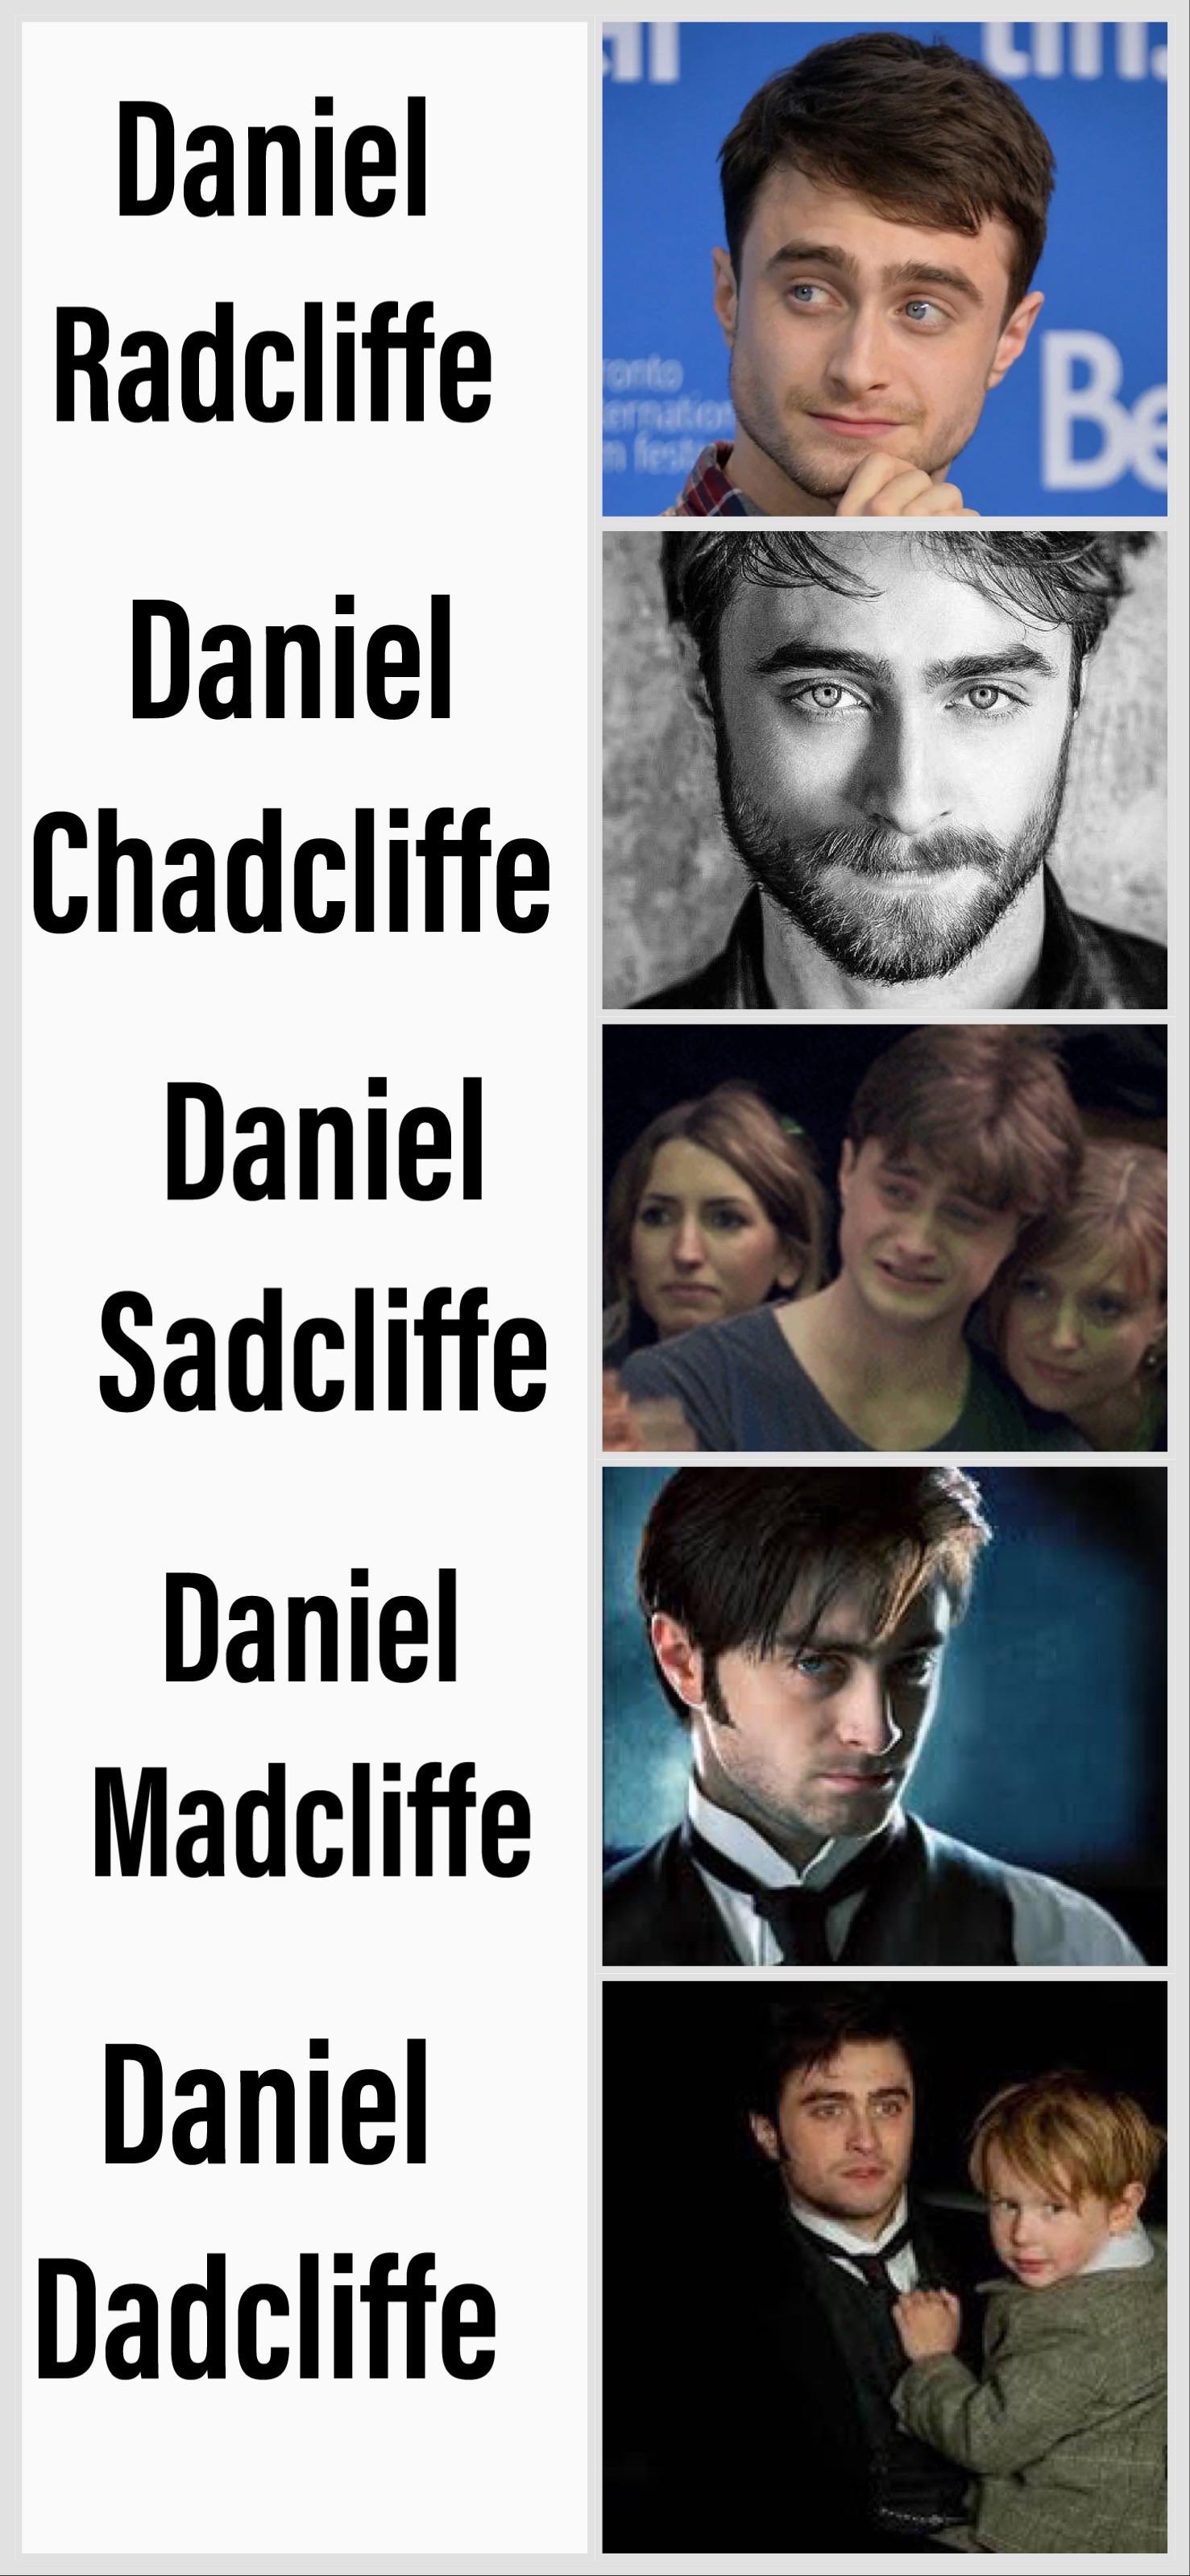 funny memes and pics - human behavior - Daniel Radcliffe Daniel Chadcliffe Daniel Sadcliffe Daniel Madcliffe Daniel Dadcliffe onto festy Prus Be